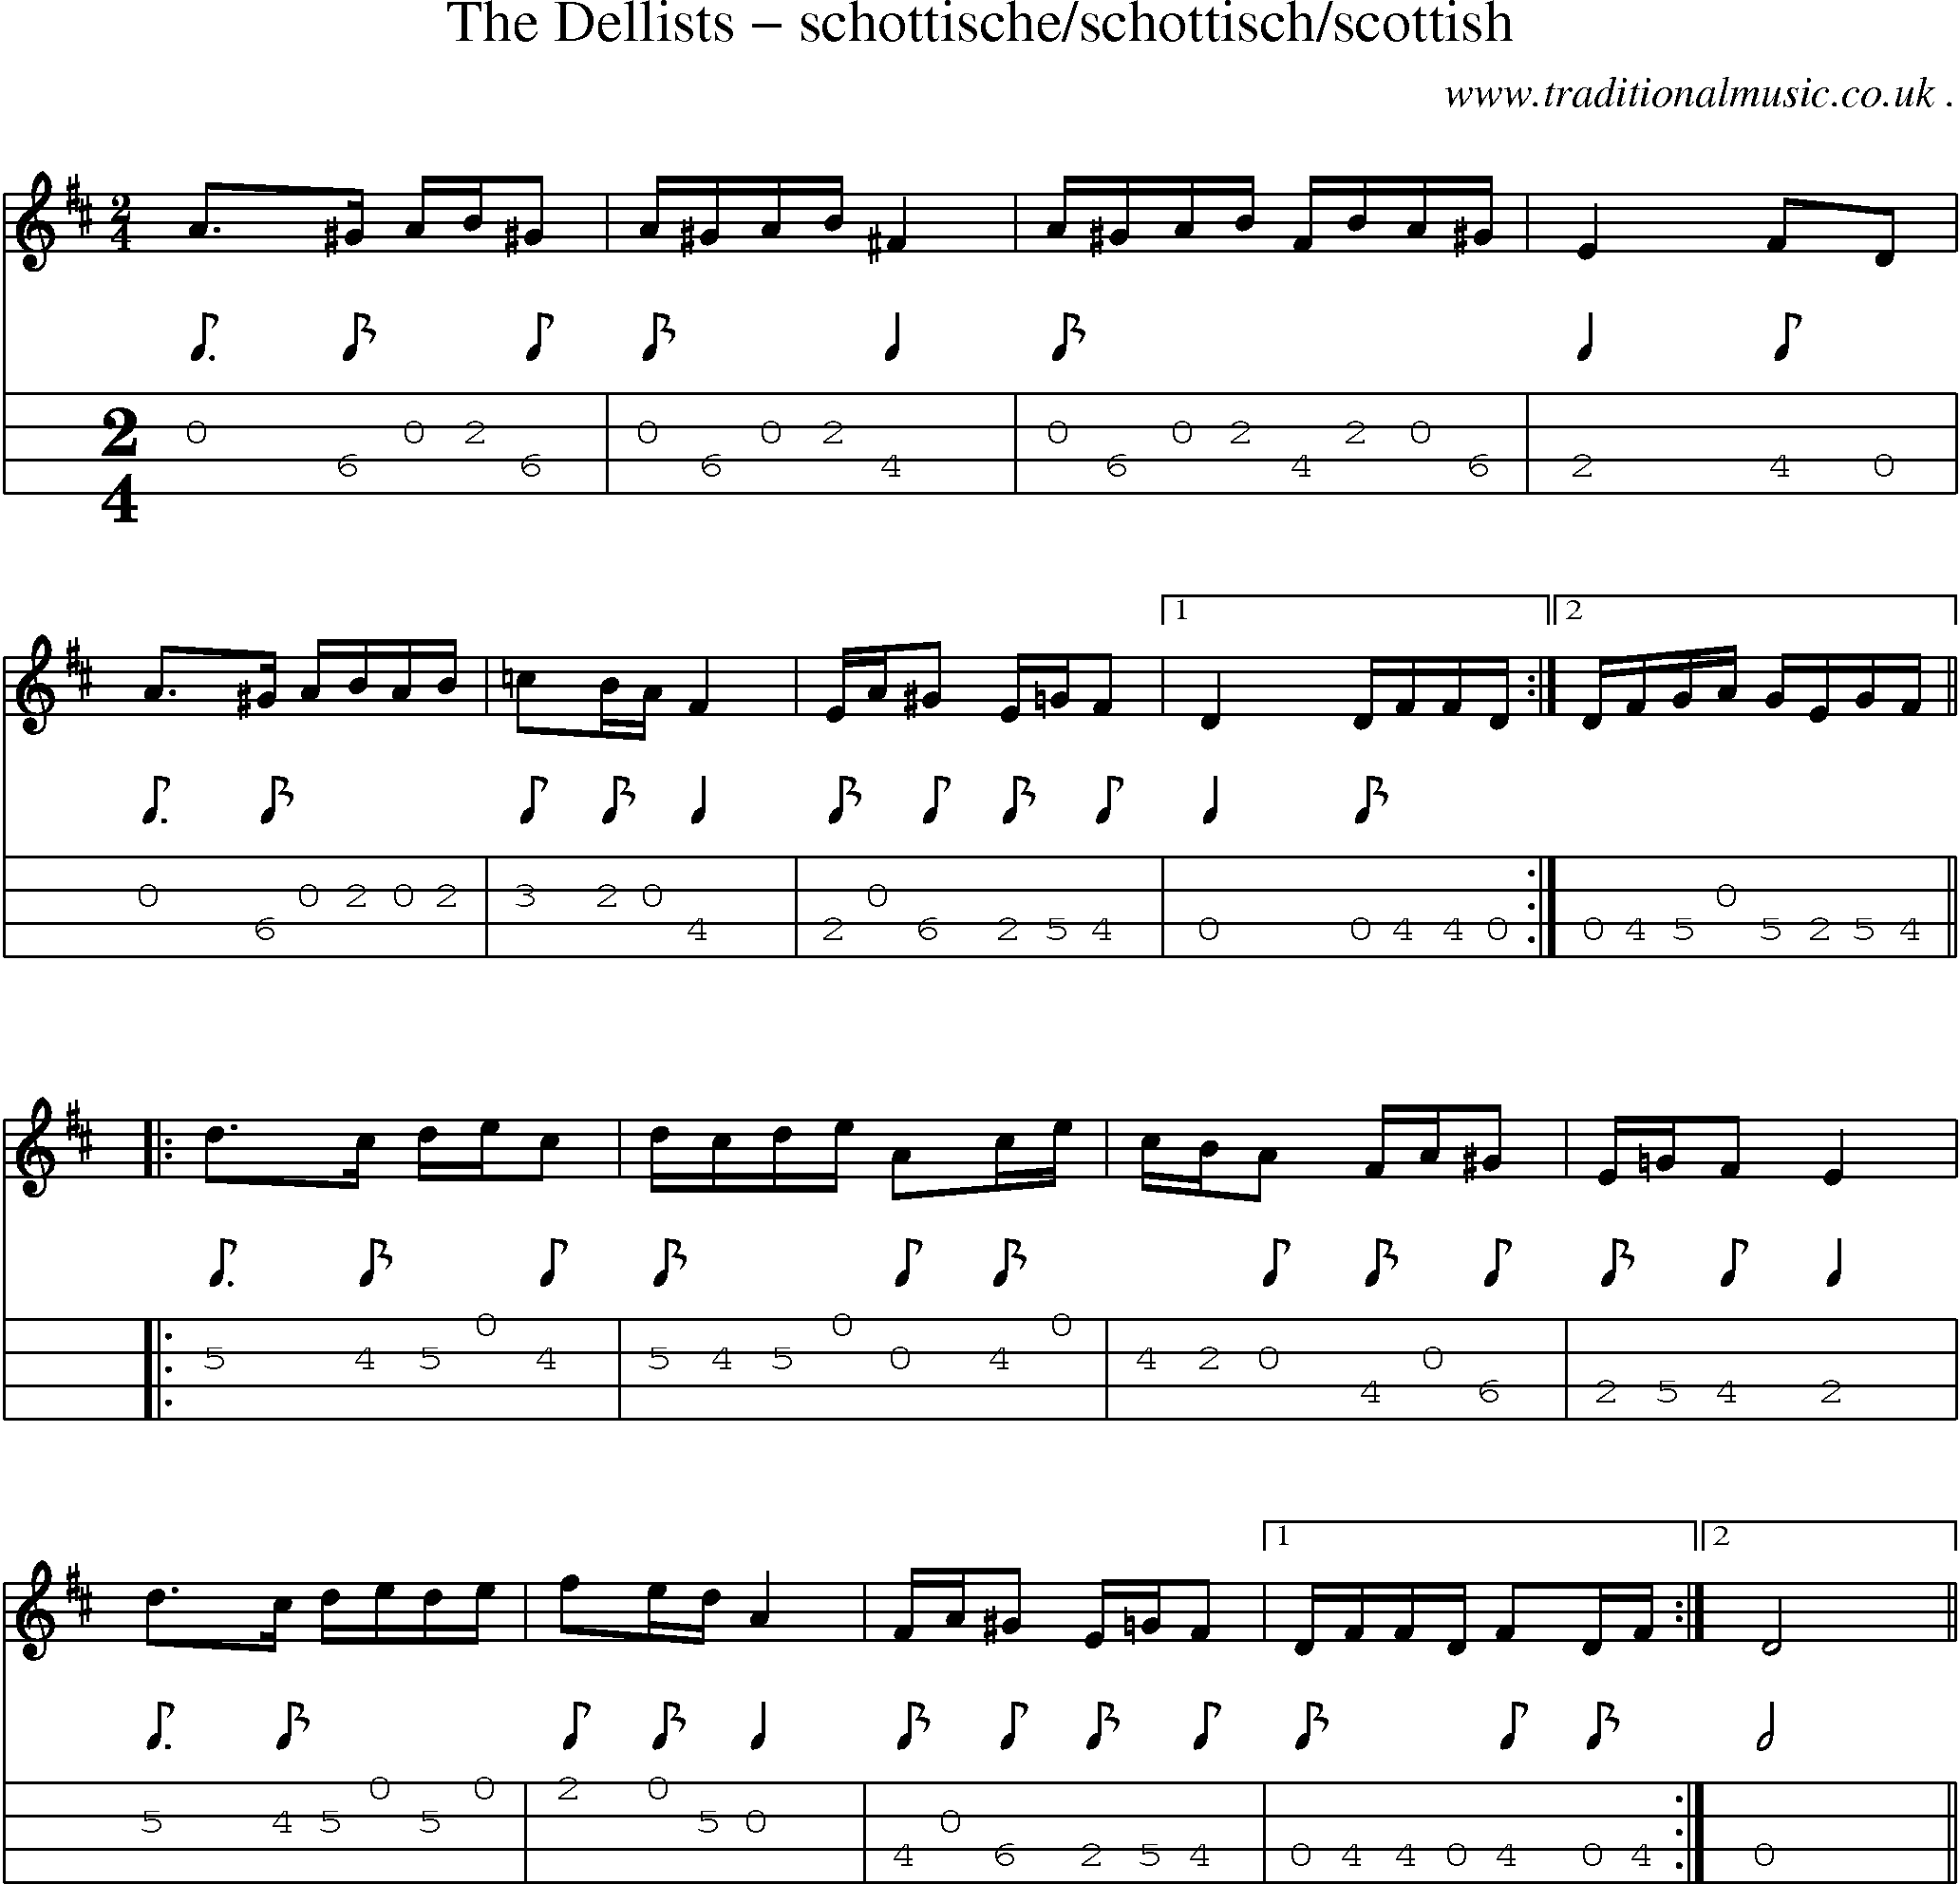 Sheet-Music and Mandolin Tabs for The Dellists Schottischeschottischscottish